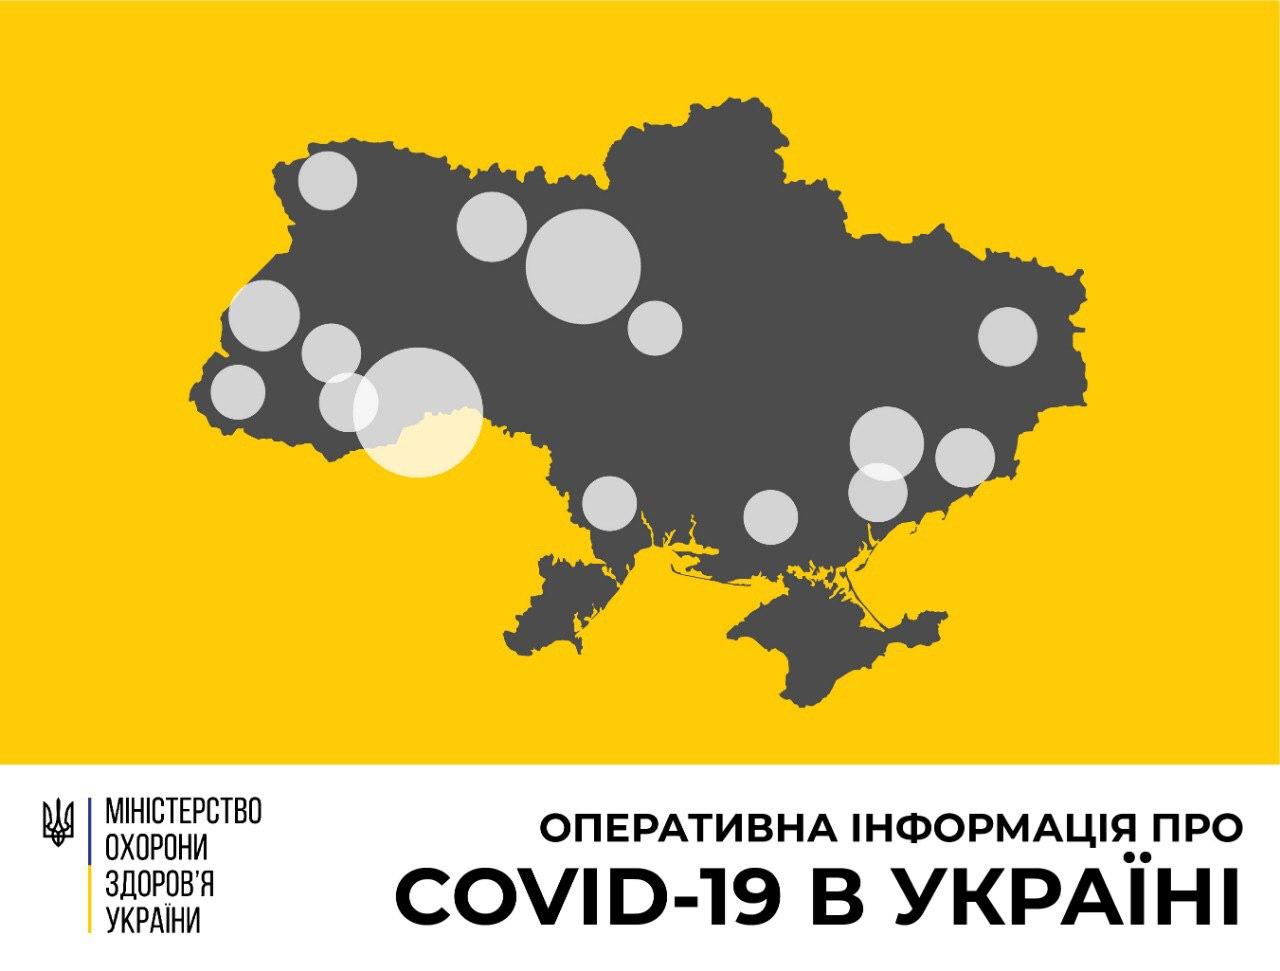 В Україні зафіксовано 218 випадків коронавірусної хвороби COVID-19  - МОЗ